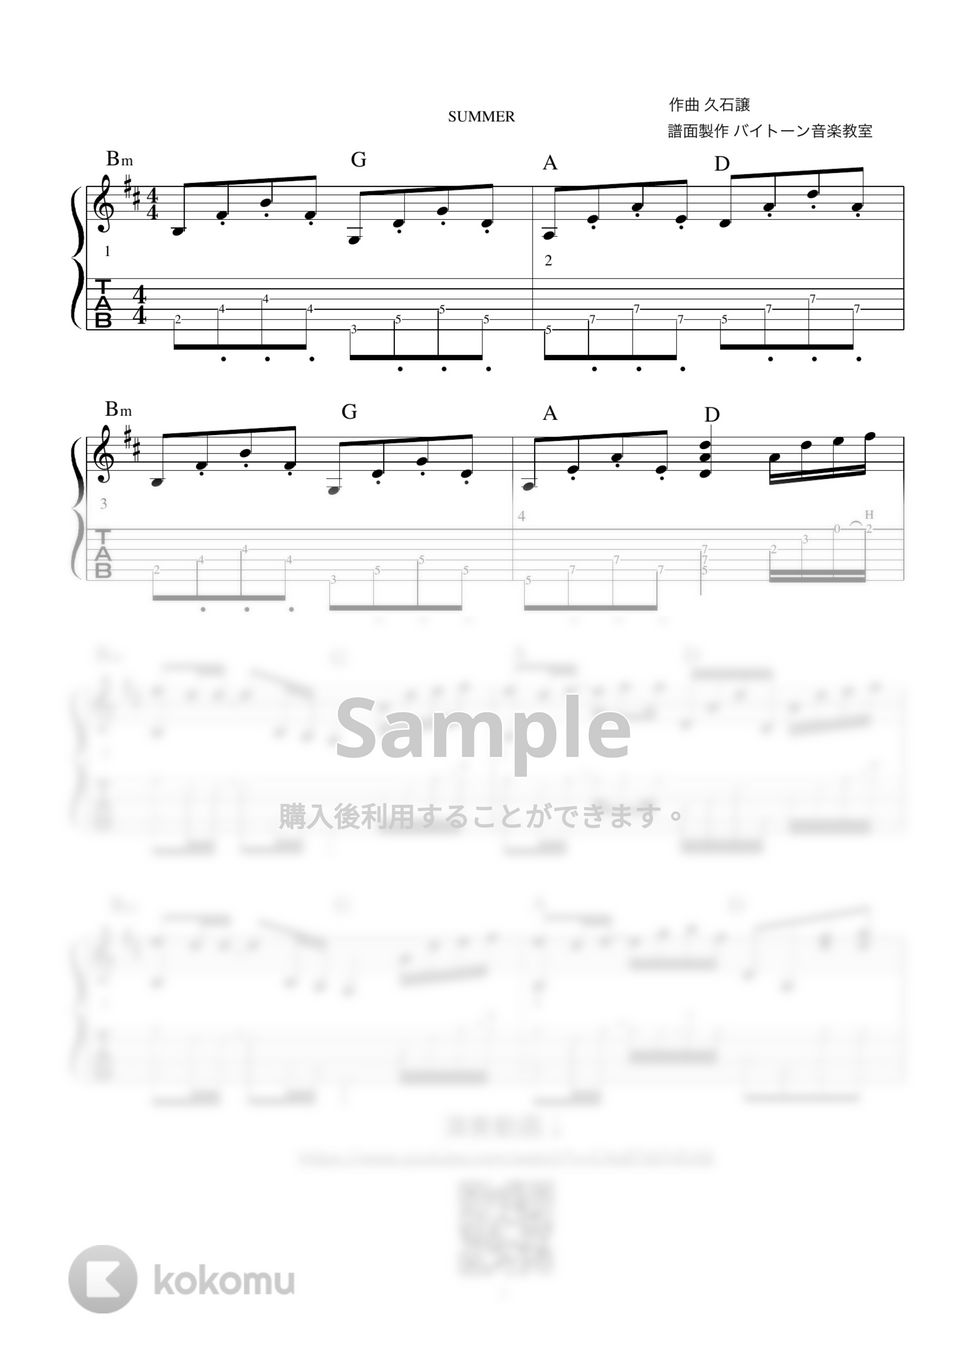 久石譲 - Summer (アコギソロギター演奏動画付TAB譜) by バイトーン音楽教室